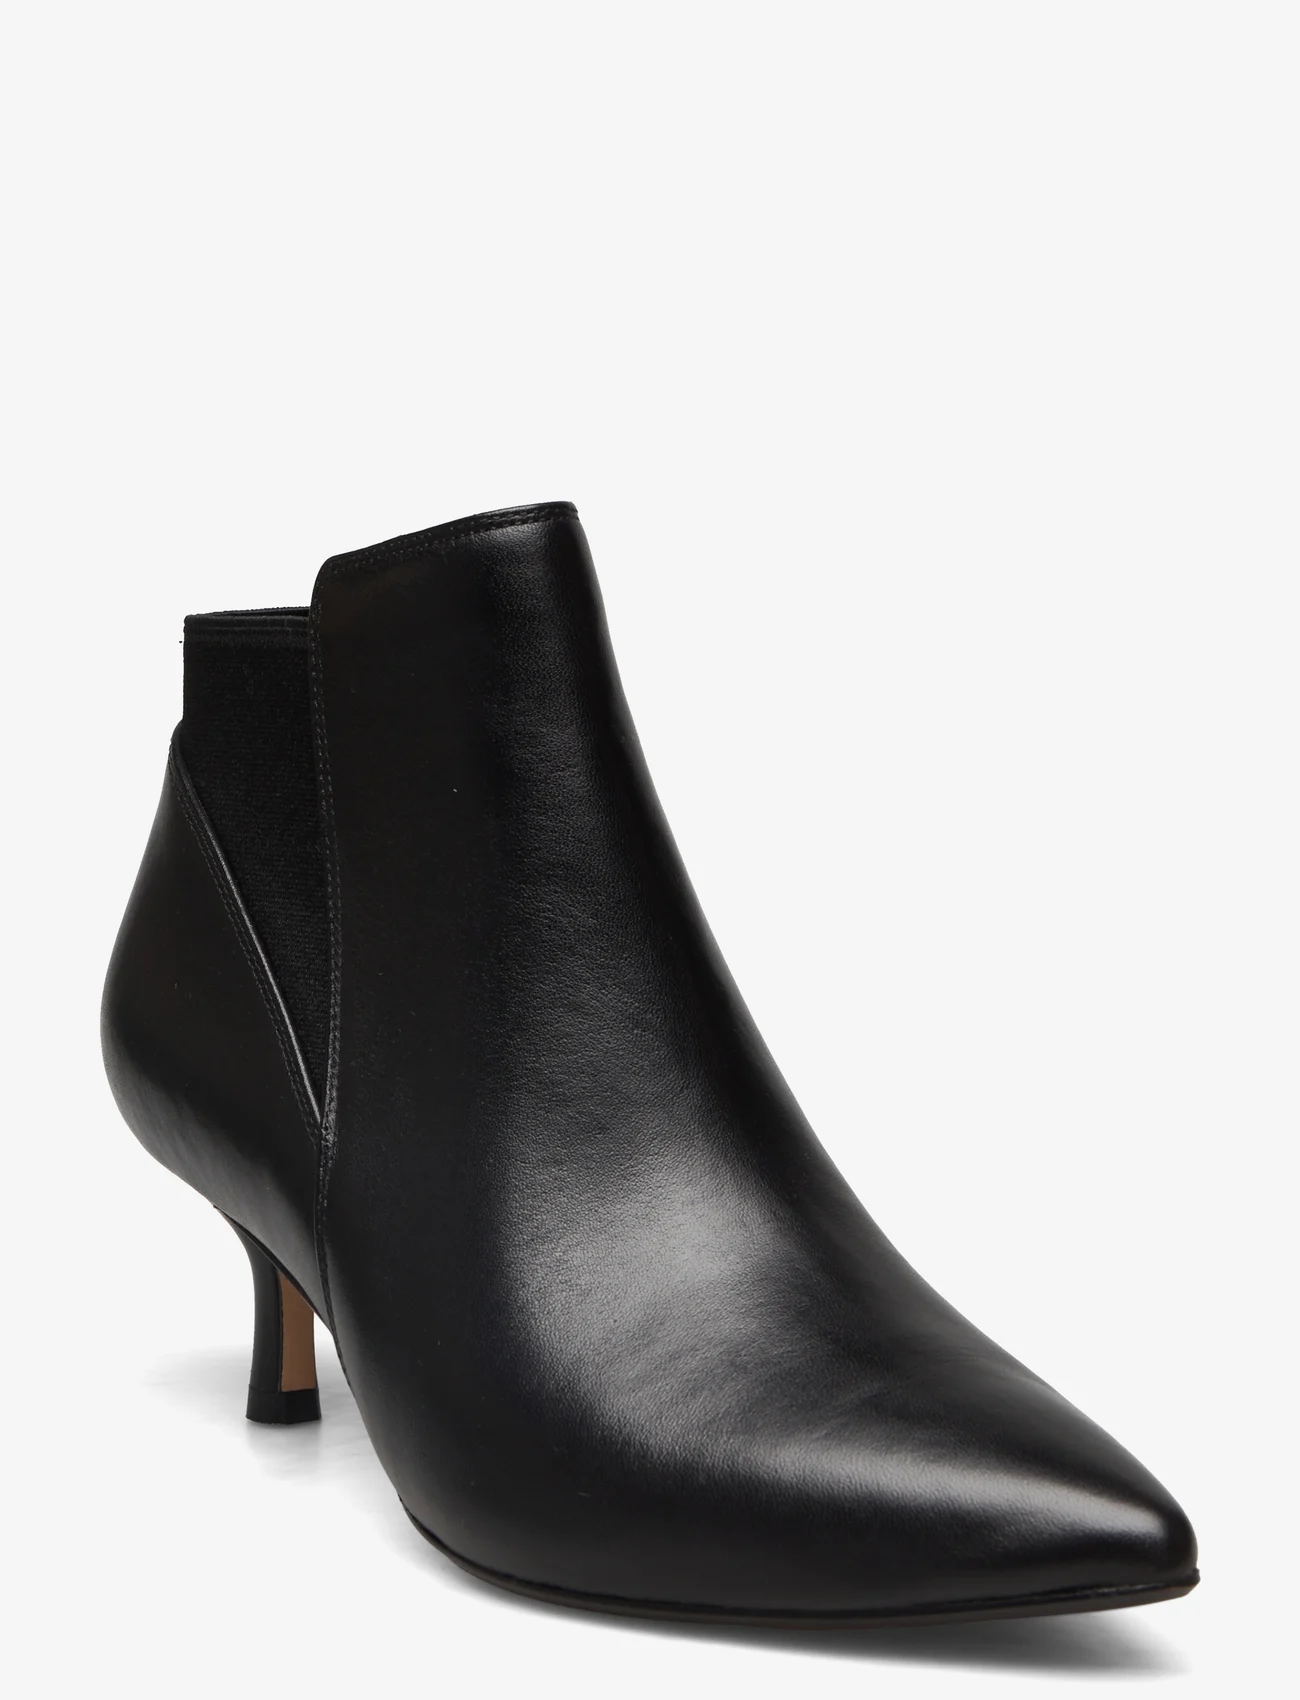 Clarks - Violet55 Up - high heel - black leather - 0